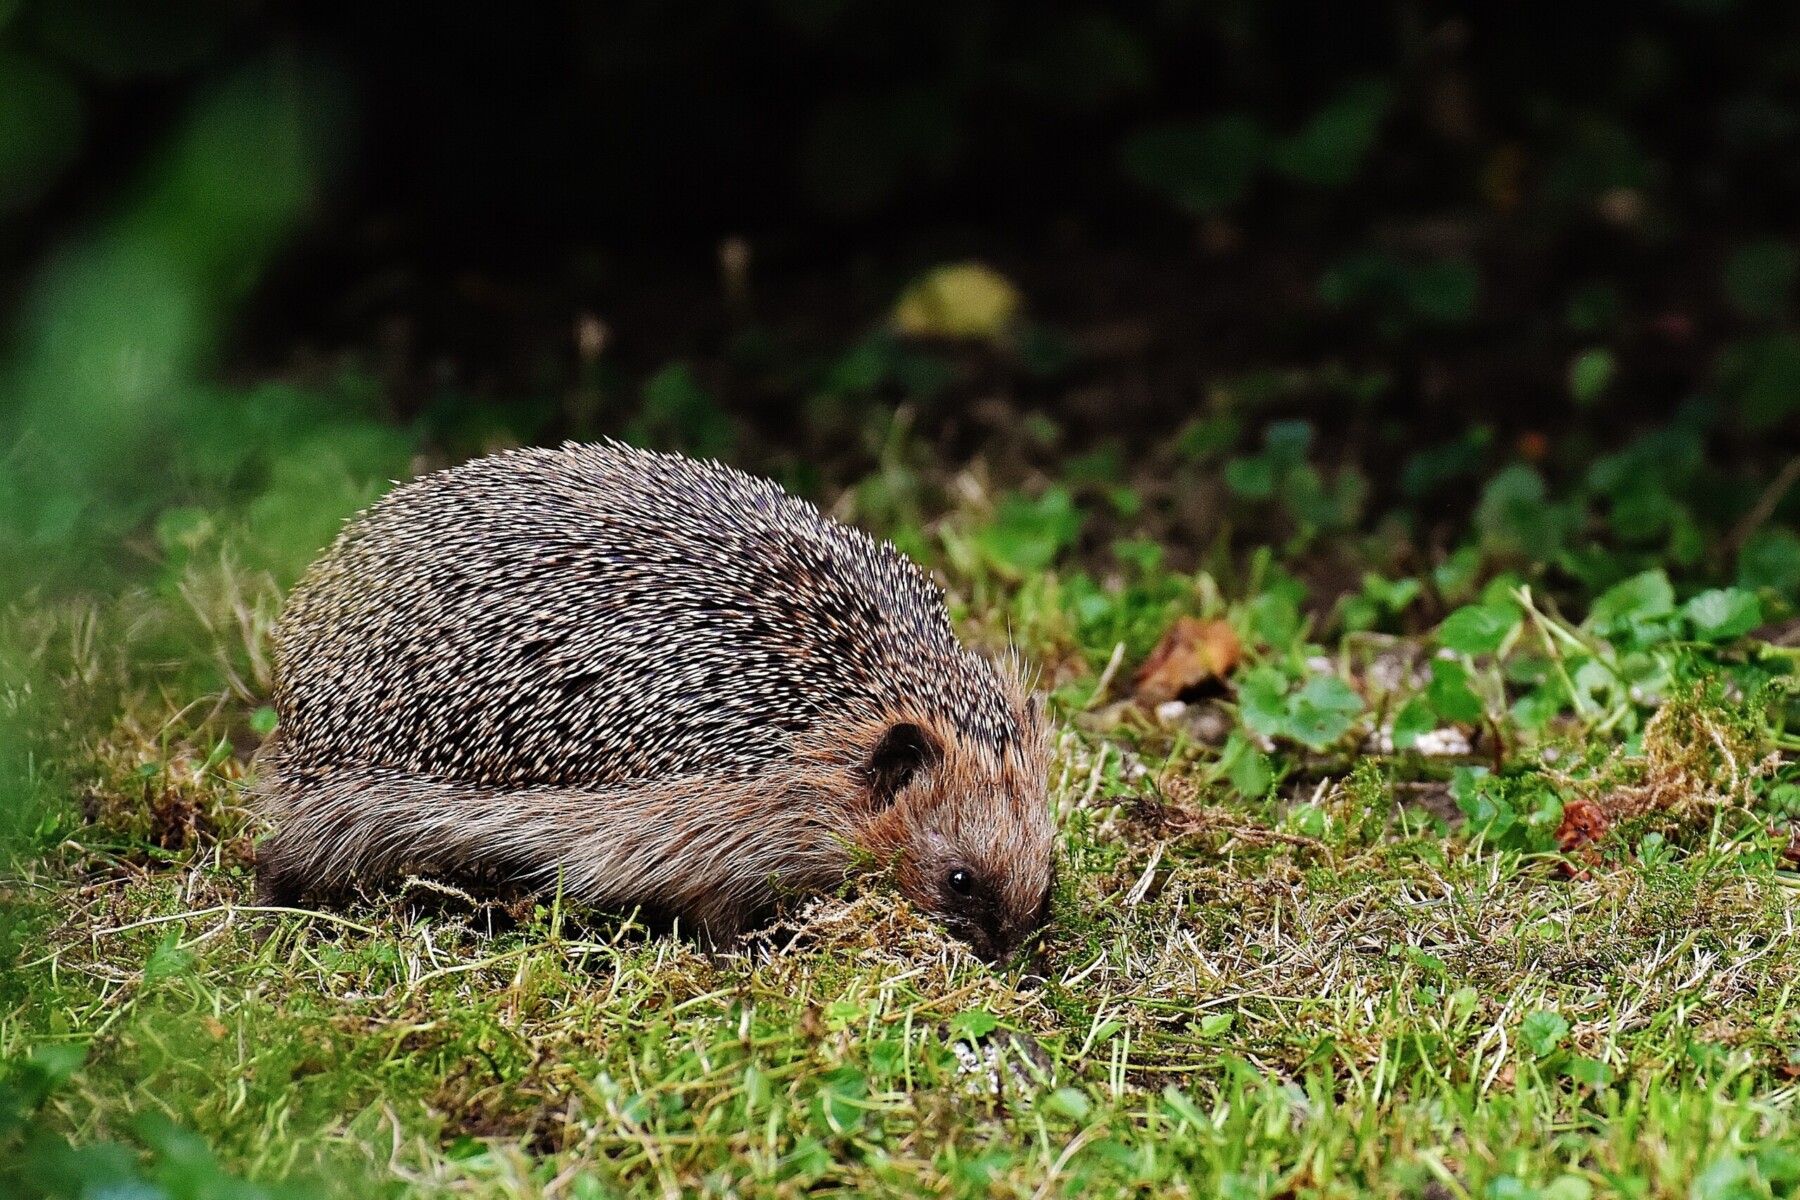 Hedgehogs in Your Garden